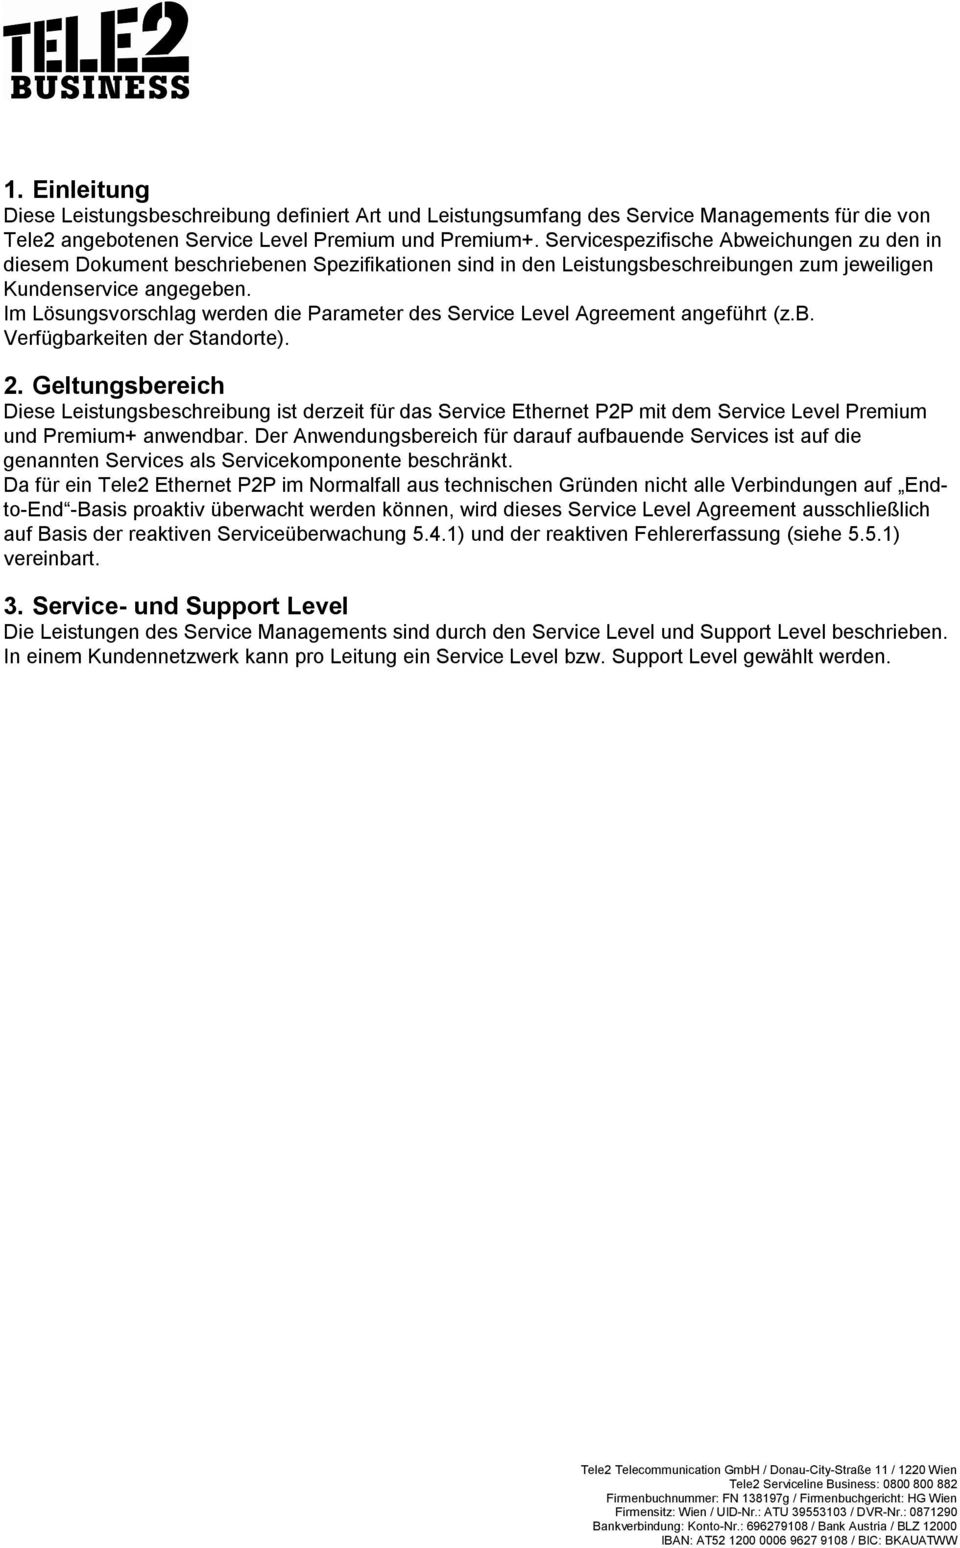 Im Lösungsvorschlag werden die Parameter des Service Level Agreement angeführt (z.b. Verfügbarkeiten der Standorte). 2.